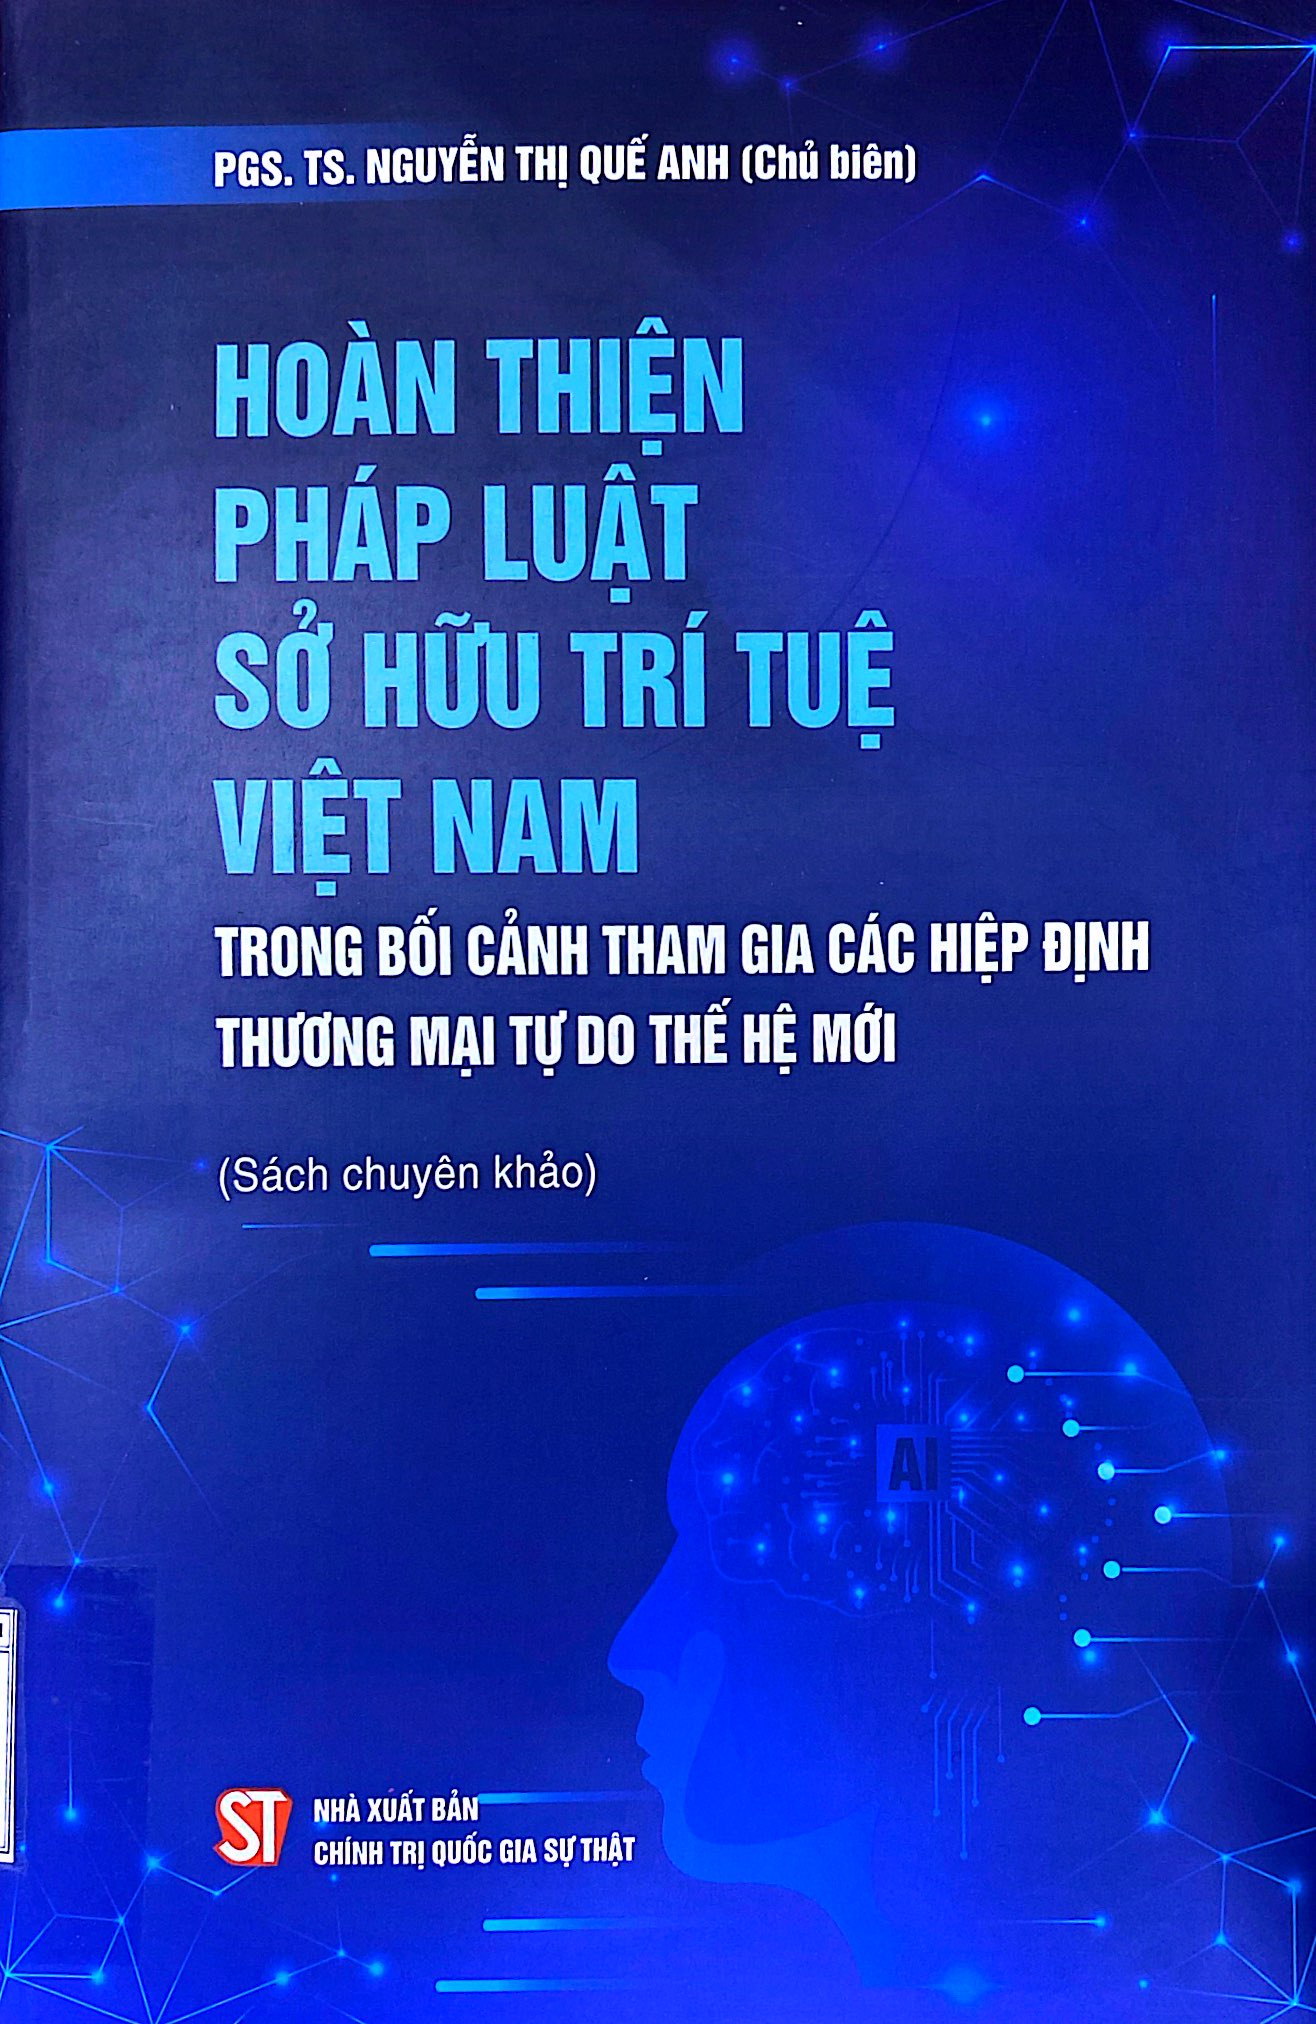 Hoàn thiện pháp luật sở hữu trí tuệ Việt Nam trong bối cảnh tham gia các hiệp định thương mại tự do thế hệ mới